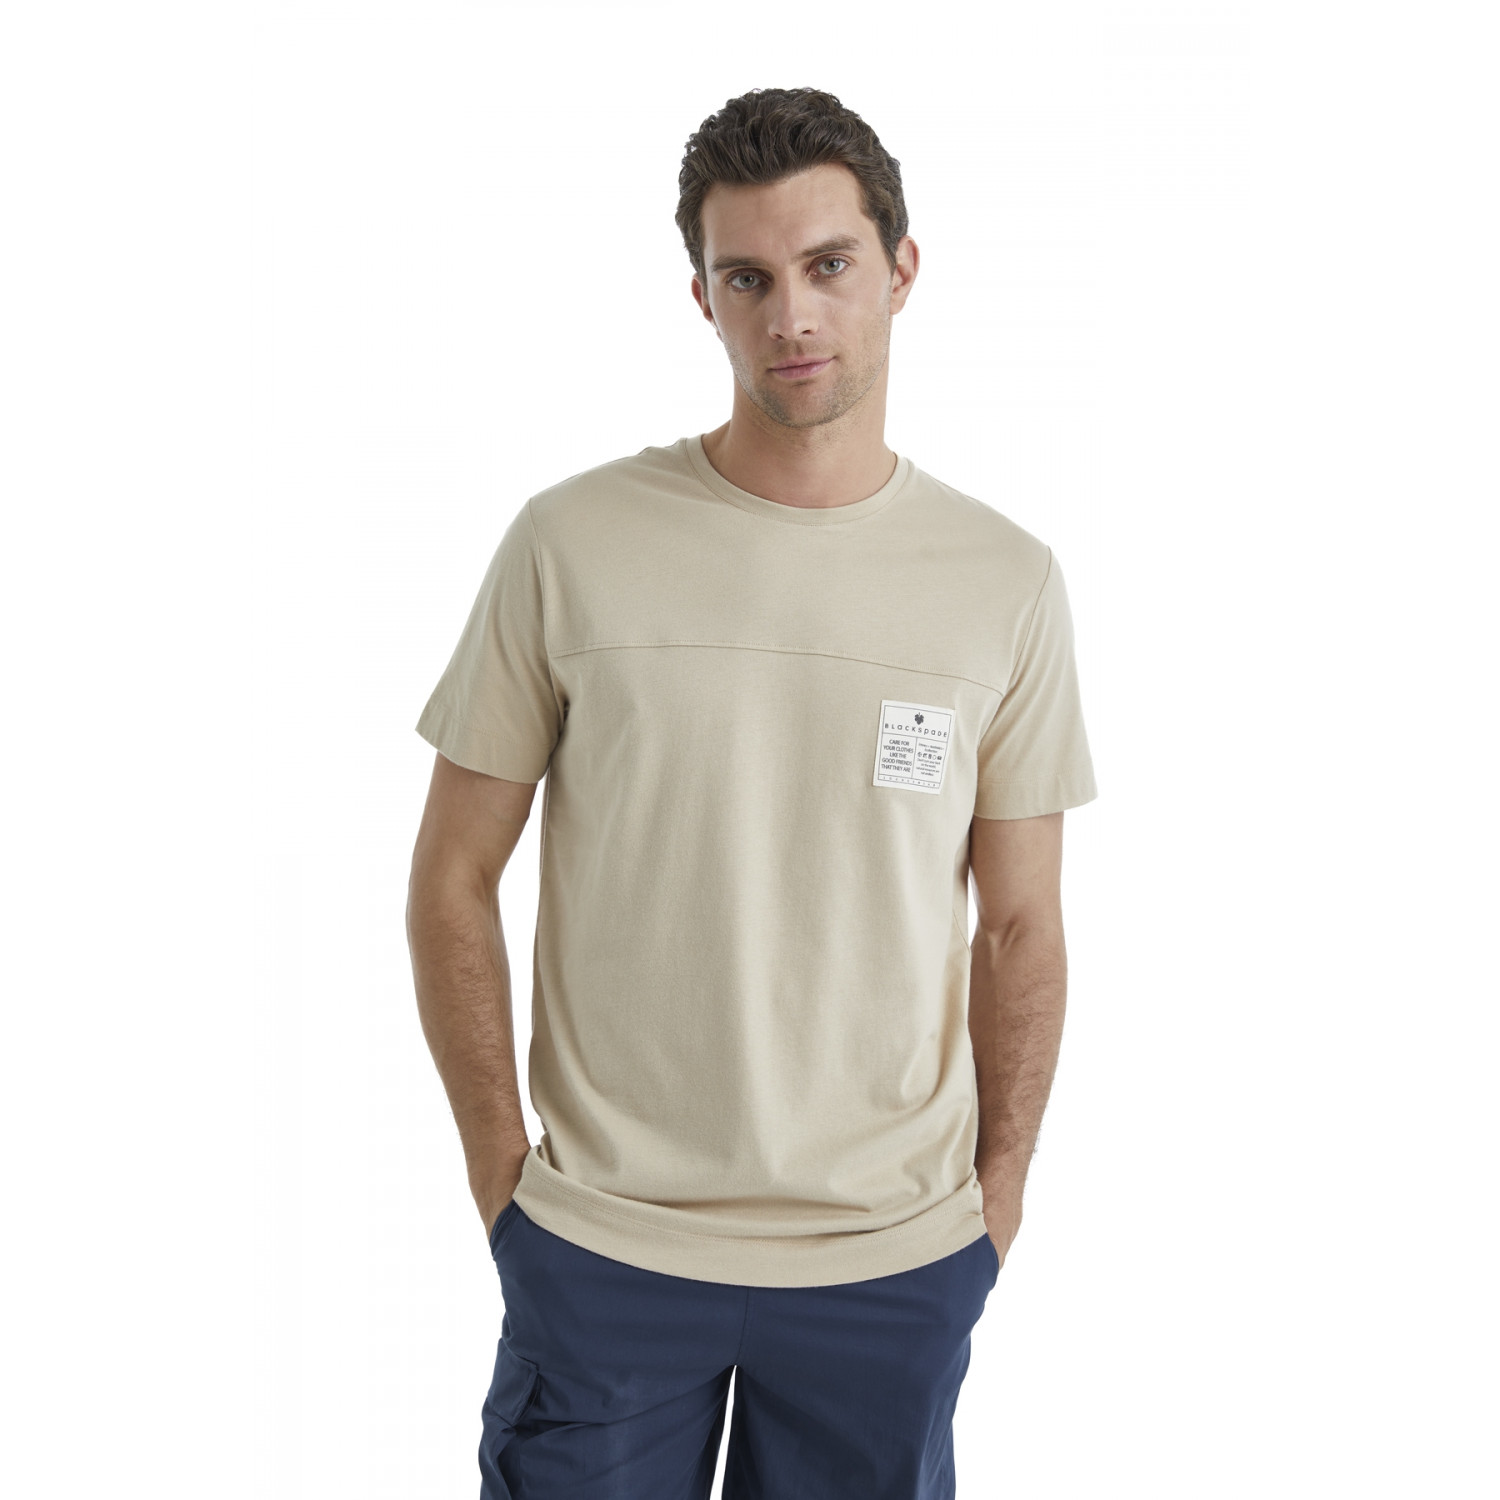 Kişi t-shirt, bej, L - 40452